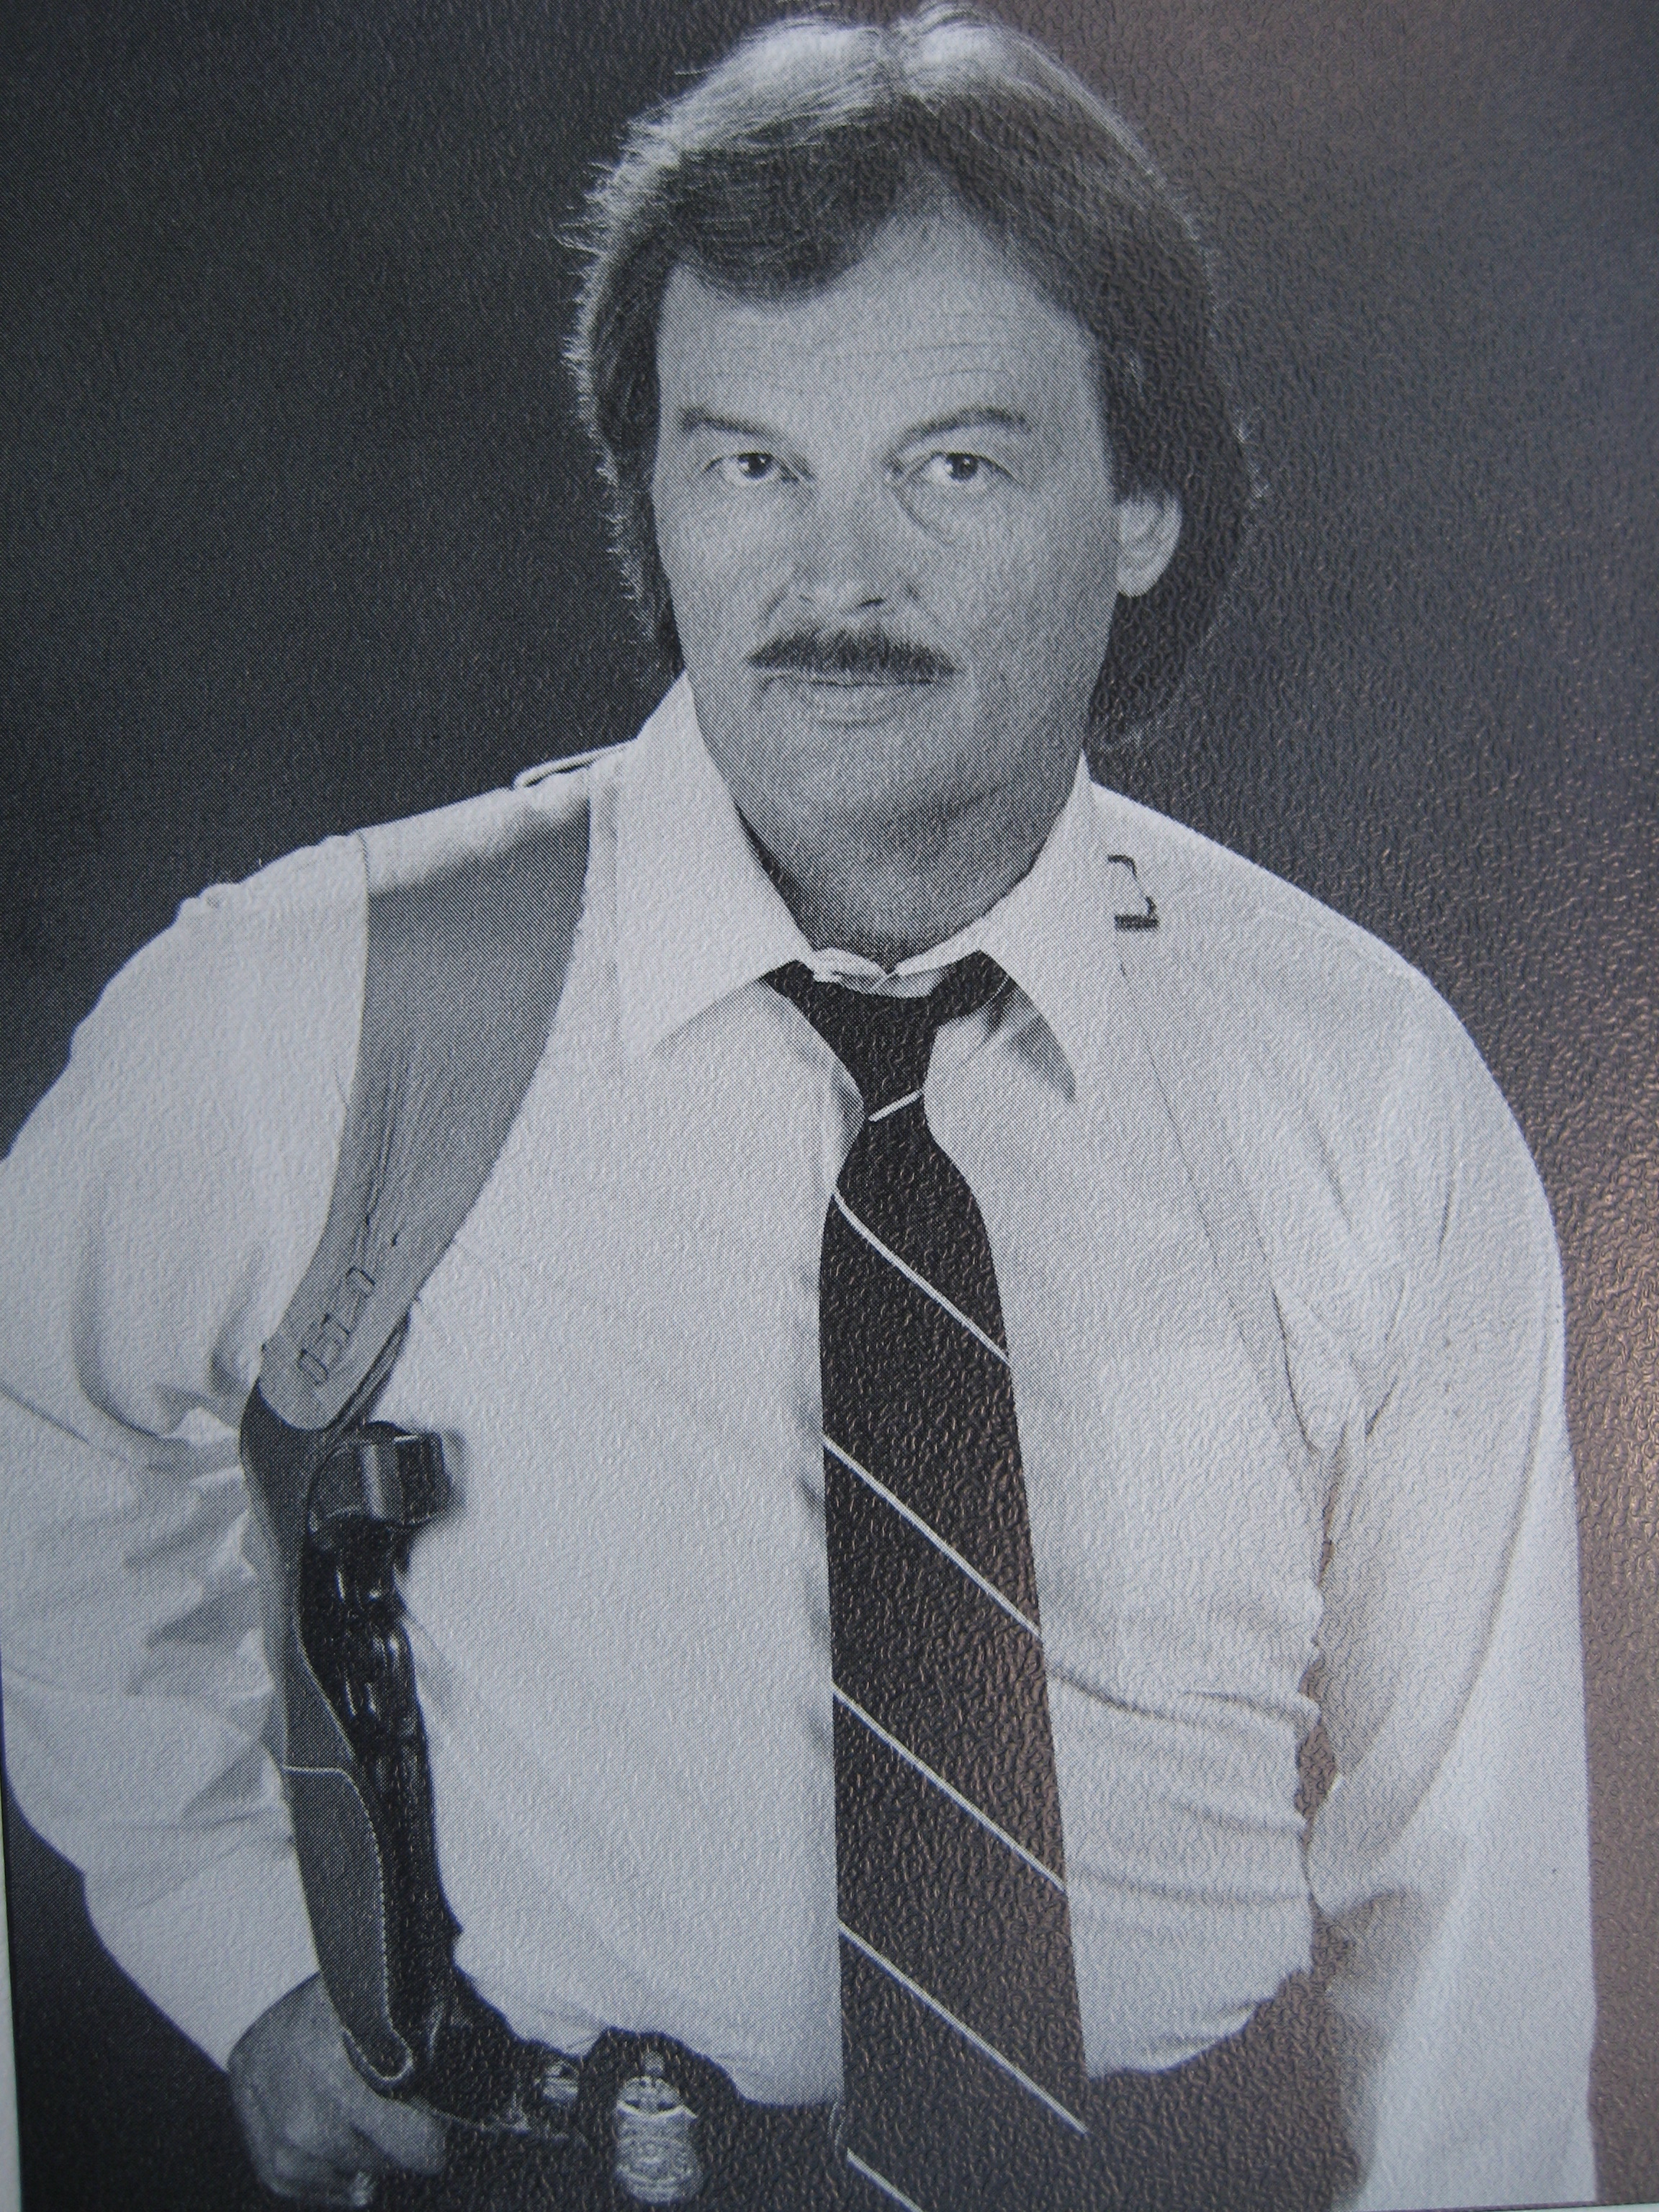 William O. Heaton, Special Agent FBI (Retired) 1967 - 1997